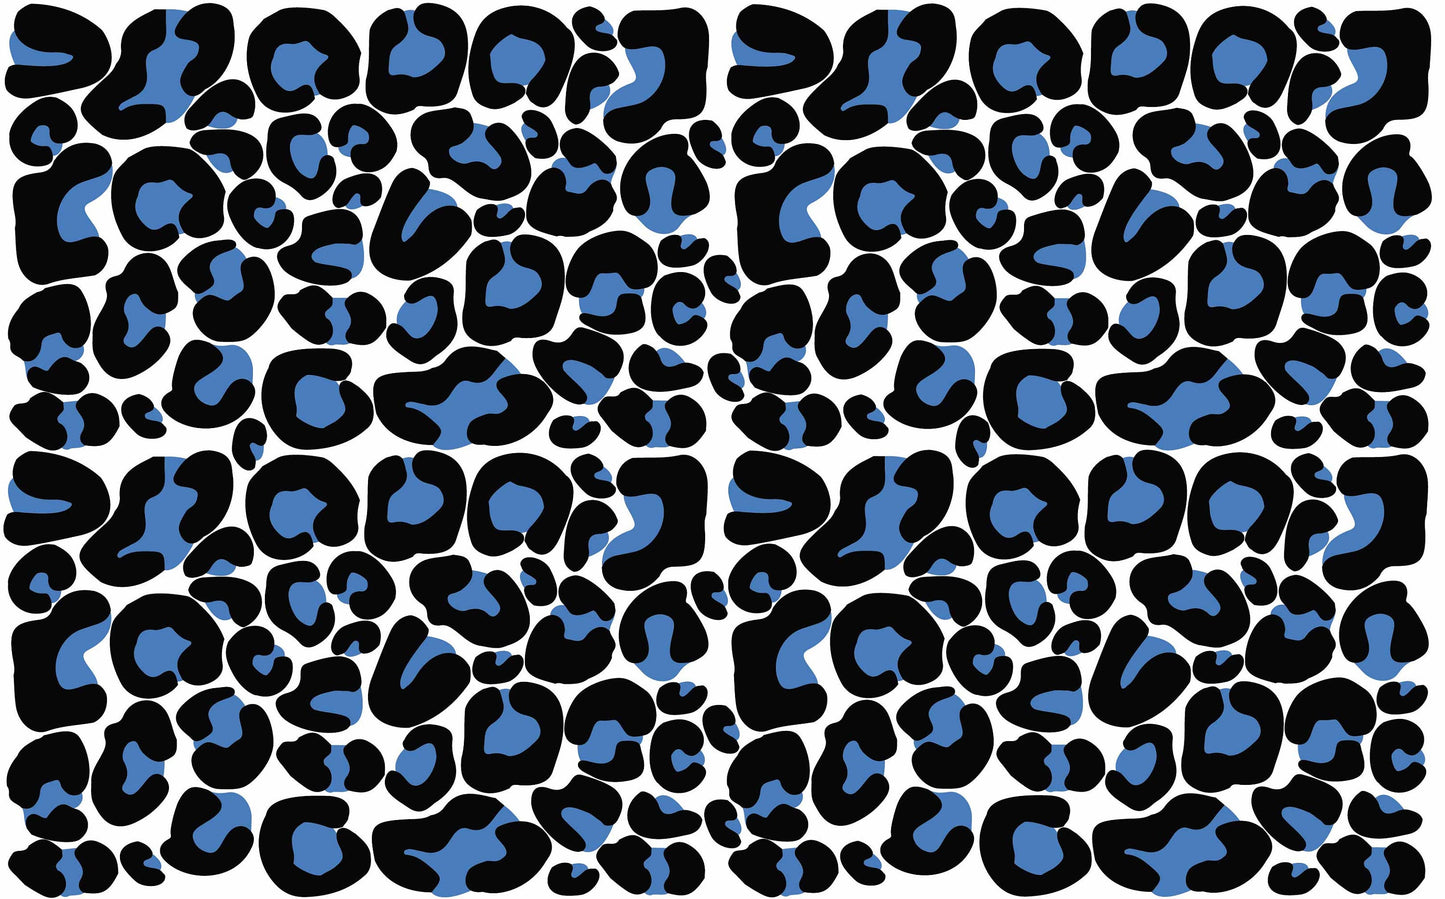 Leopard print wall decal Animal Cats spots Polka Dot Stickers, LF127